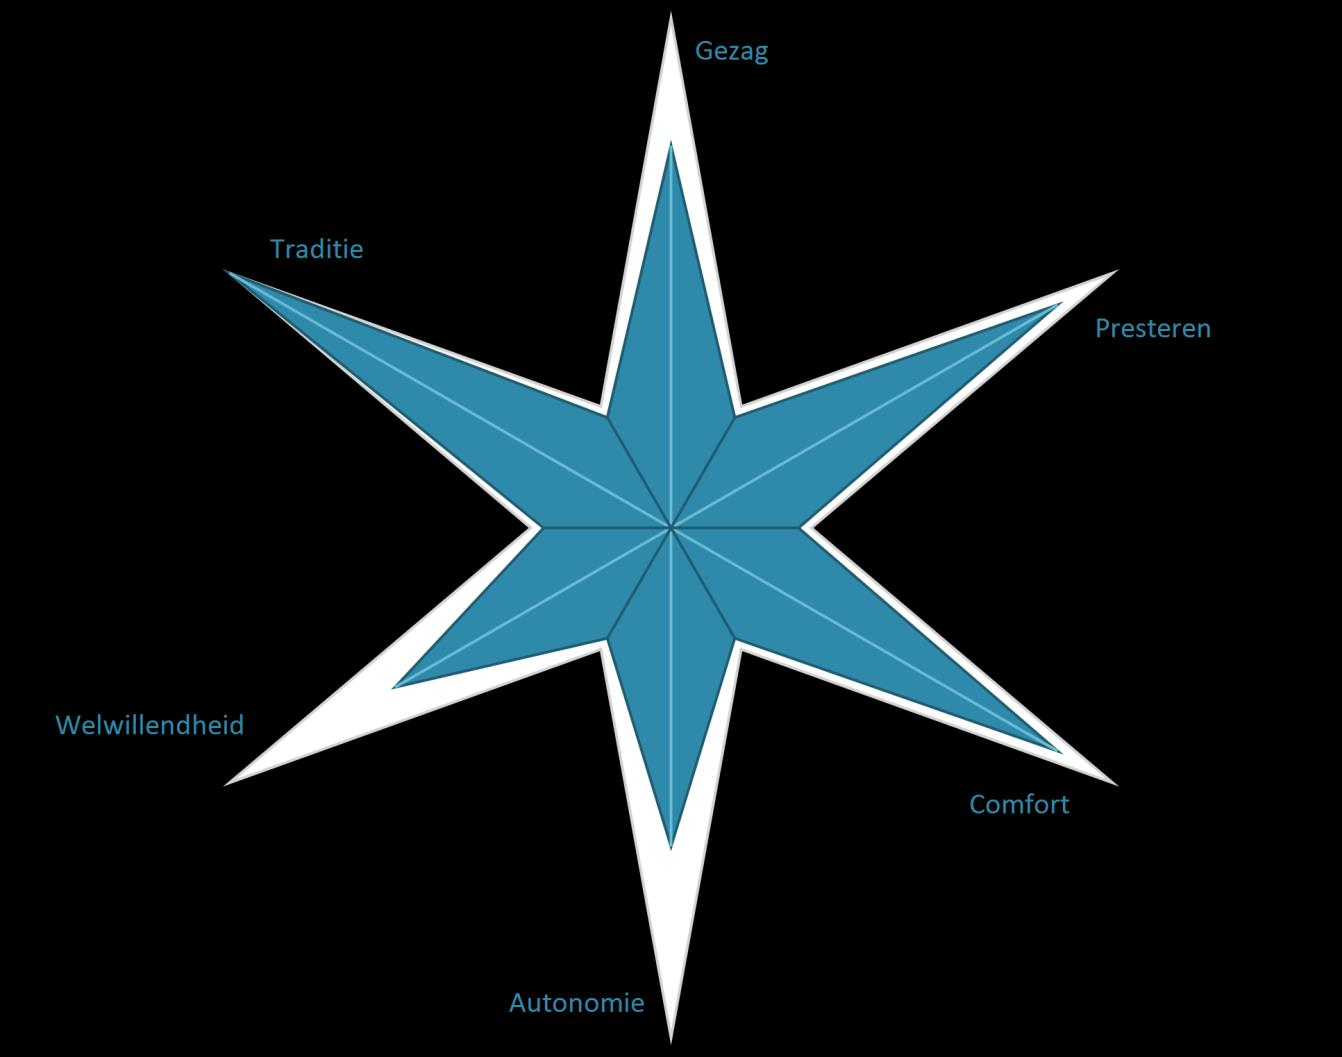 In deze figuur zie je jouw voorkeur voor de organisatietypen. Hoe meer de punt van de ster is ingekleurd, hoe meer jouw voorkeur uitgaat naar dit type organisatie.